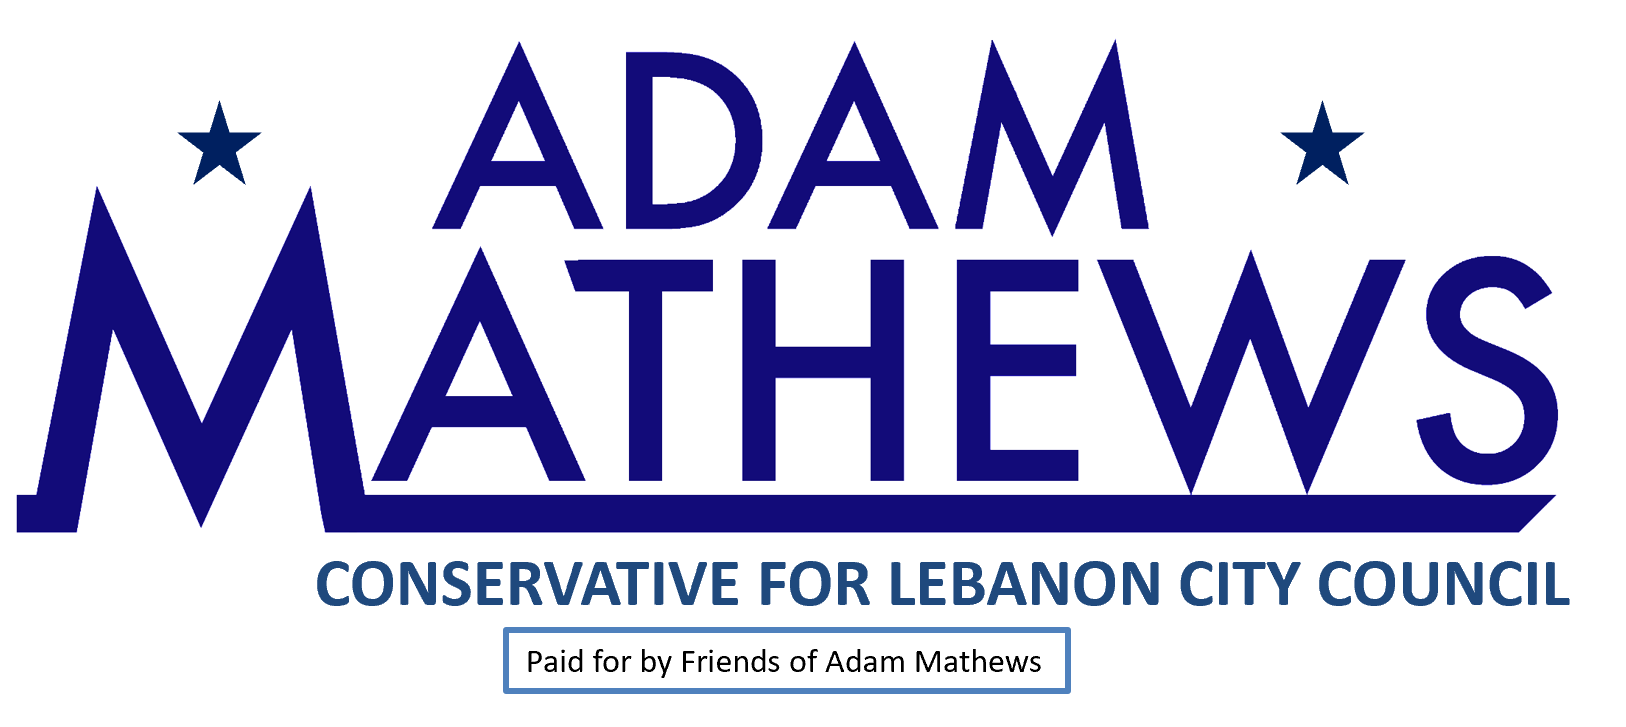 Friends of Adam Mathews logo